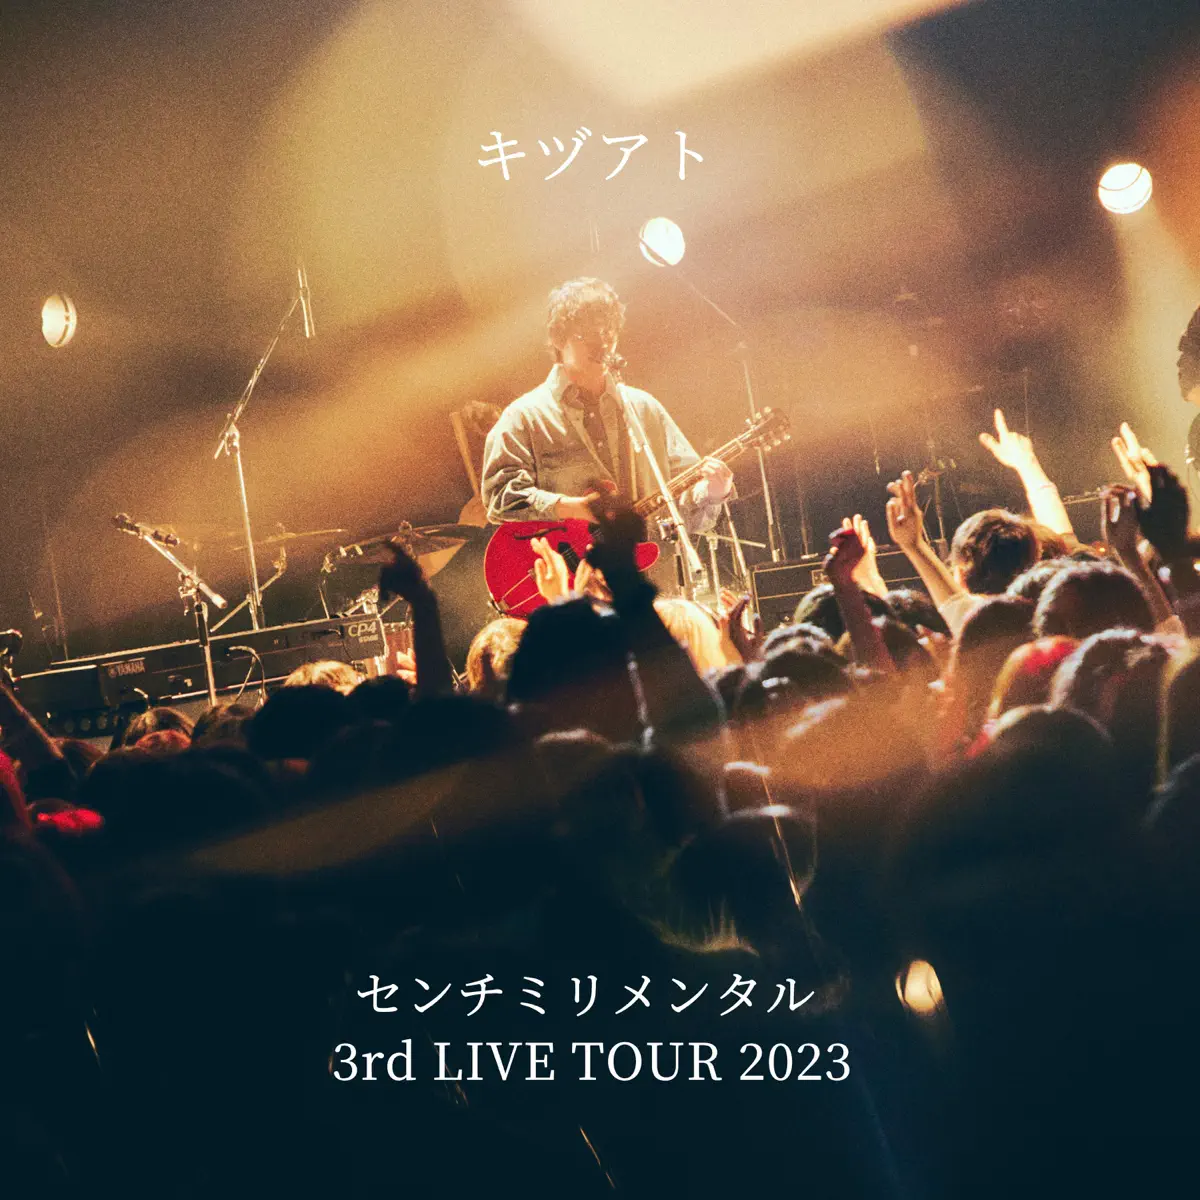 センチミリメンタル - キヅアト - センチミリメンタル 3rd LIVE TOUR 2023 - Single (2023) [iTunes Plus AAC M4A]-新房子